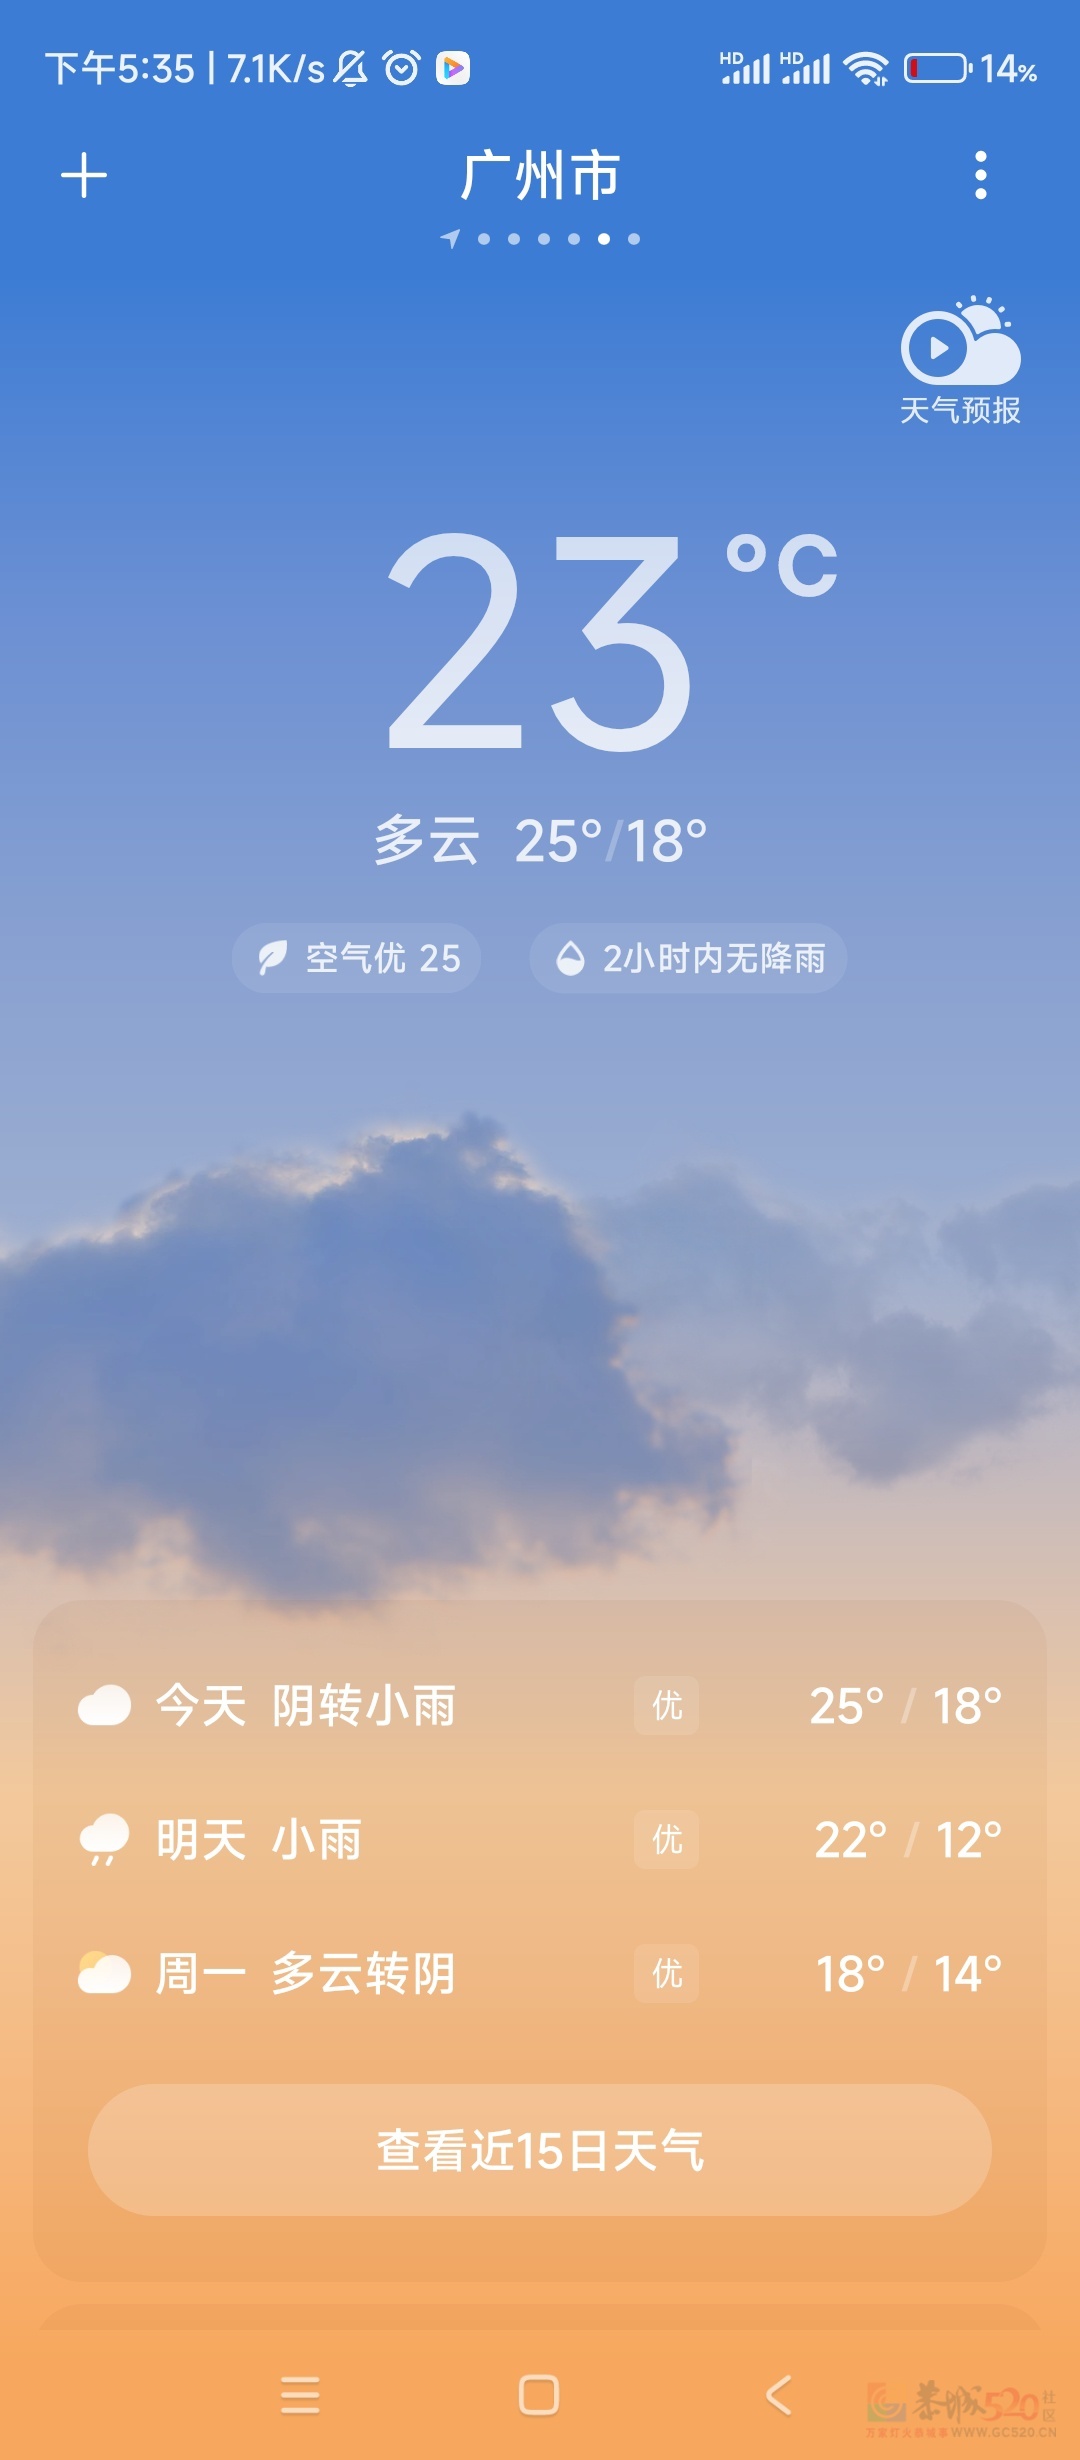 太冷了，还没有回家的都不要回来了。
 
刚从广东回来。马上要回广东了，这个太冷了814 / 作者:太冷了 / 帖子ID:313468